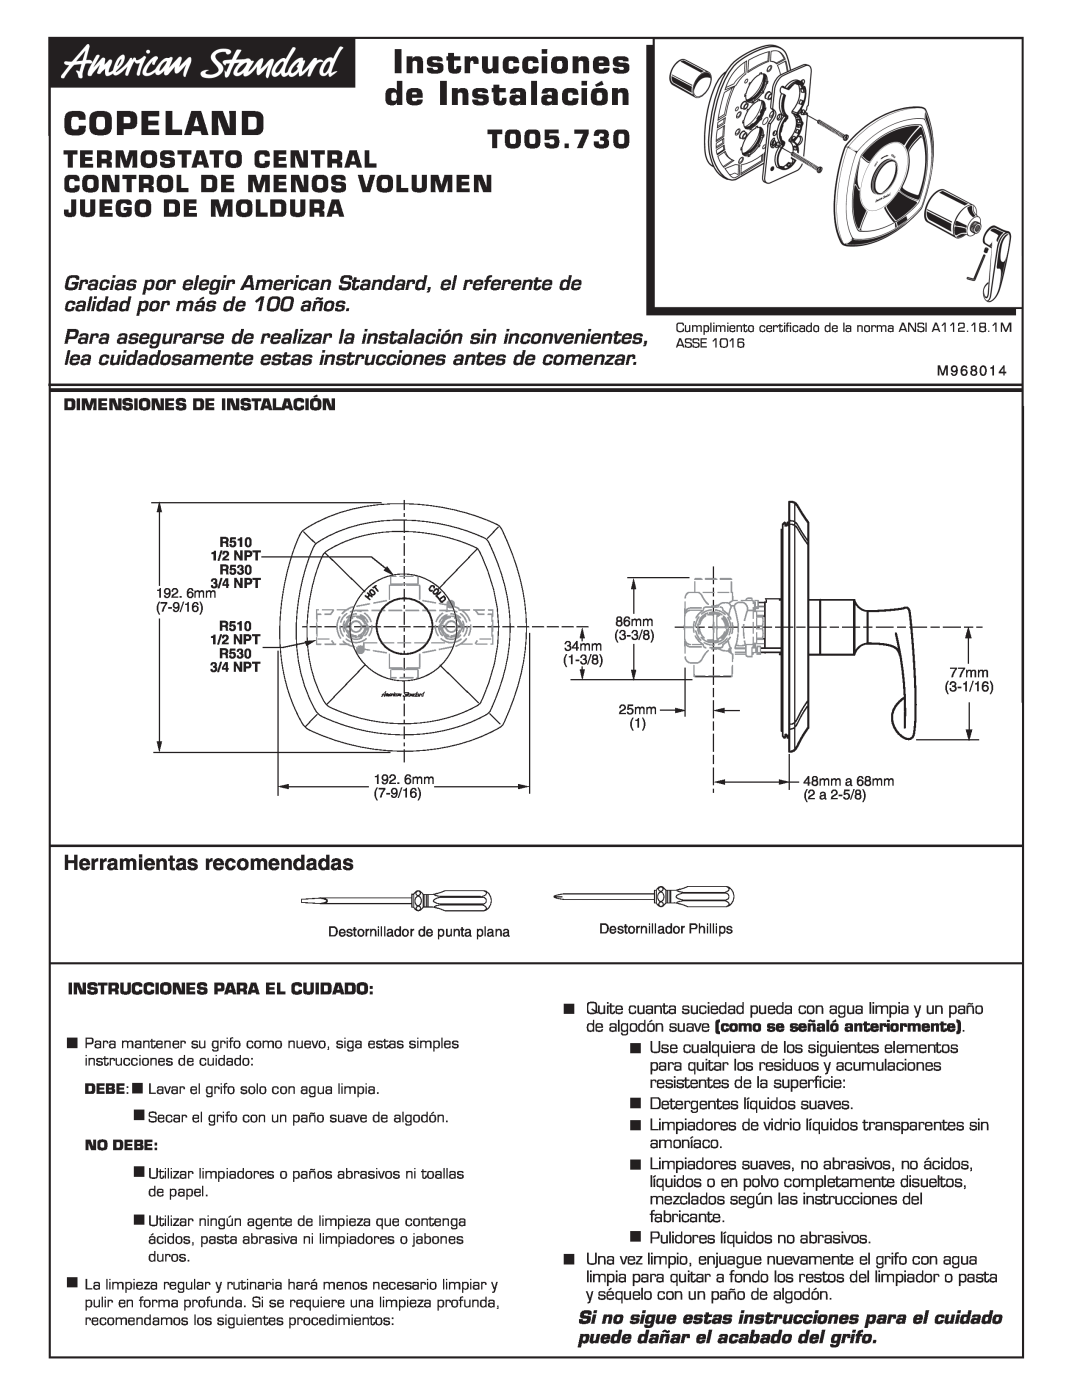 American Standard installation instructions Instrucciones de Instalación COPELANDT005.730, Herramientas recomendadas 